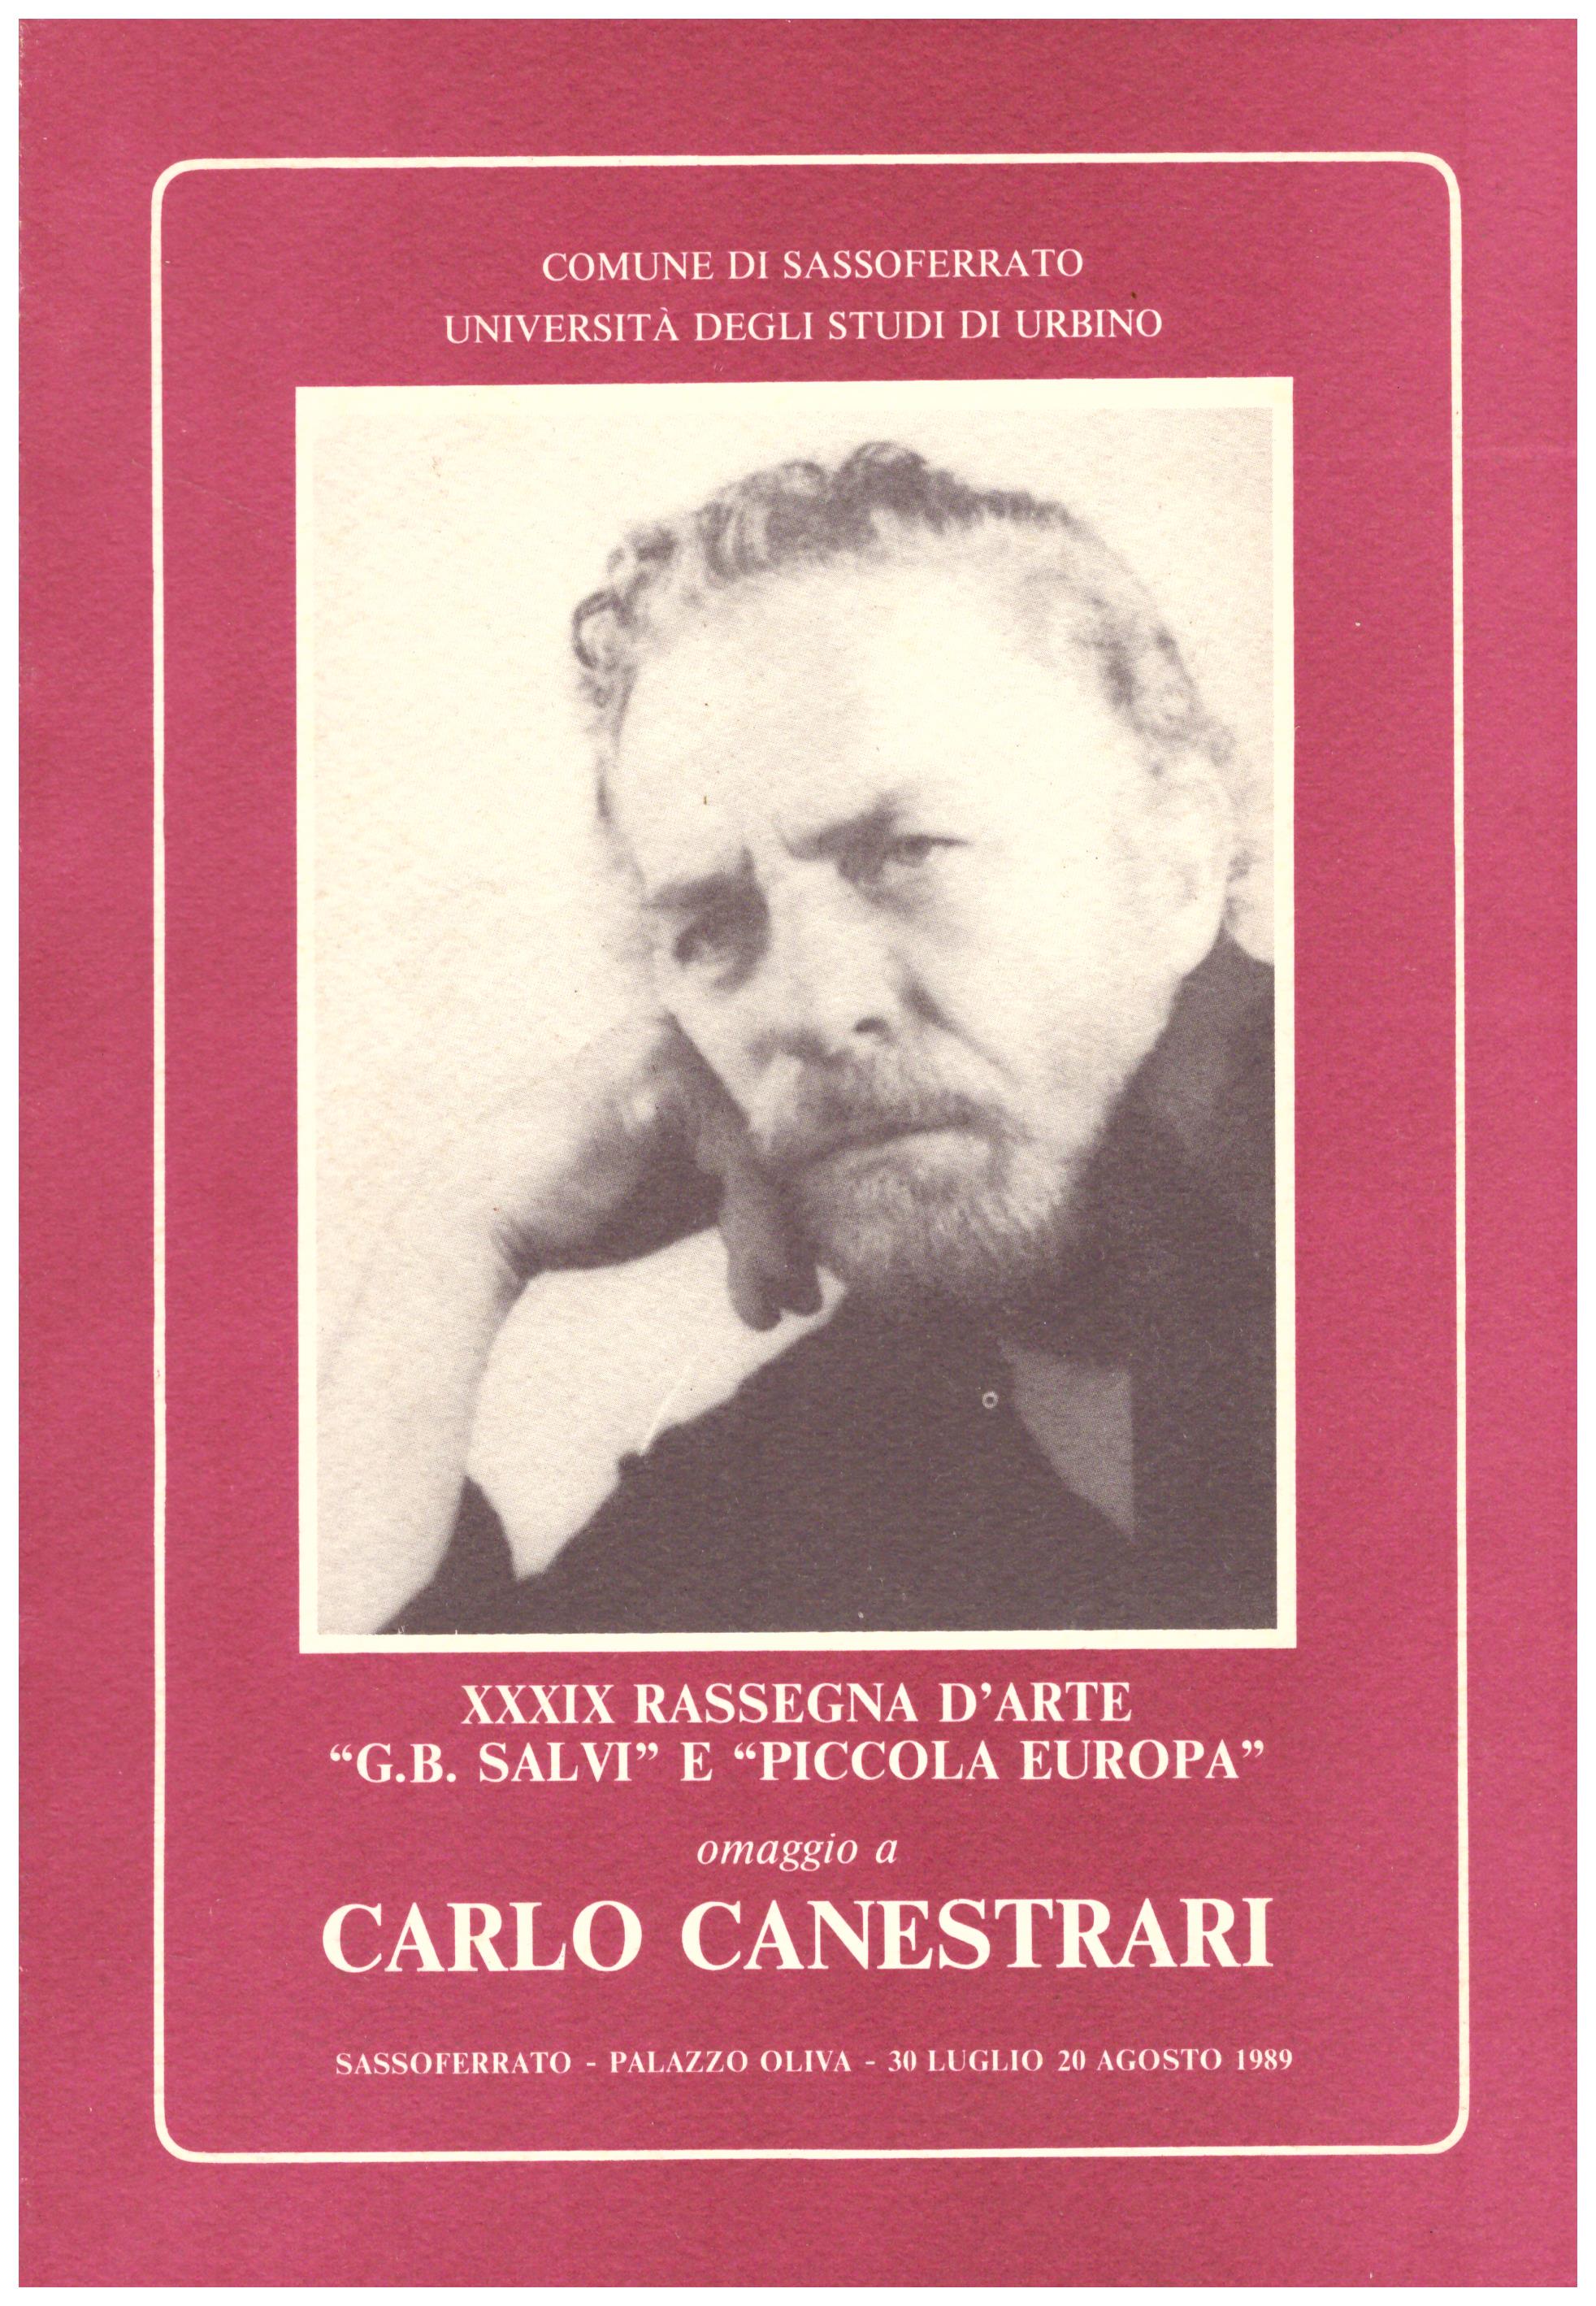 Titolo: XXXIX Rassegna d'arte G.B. Salvi e Piccola Europa Autore: AA.VV. Editore: Gramma, Perugia 1989